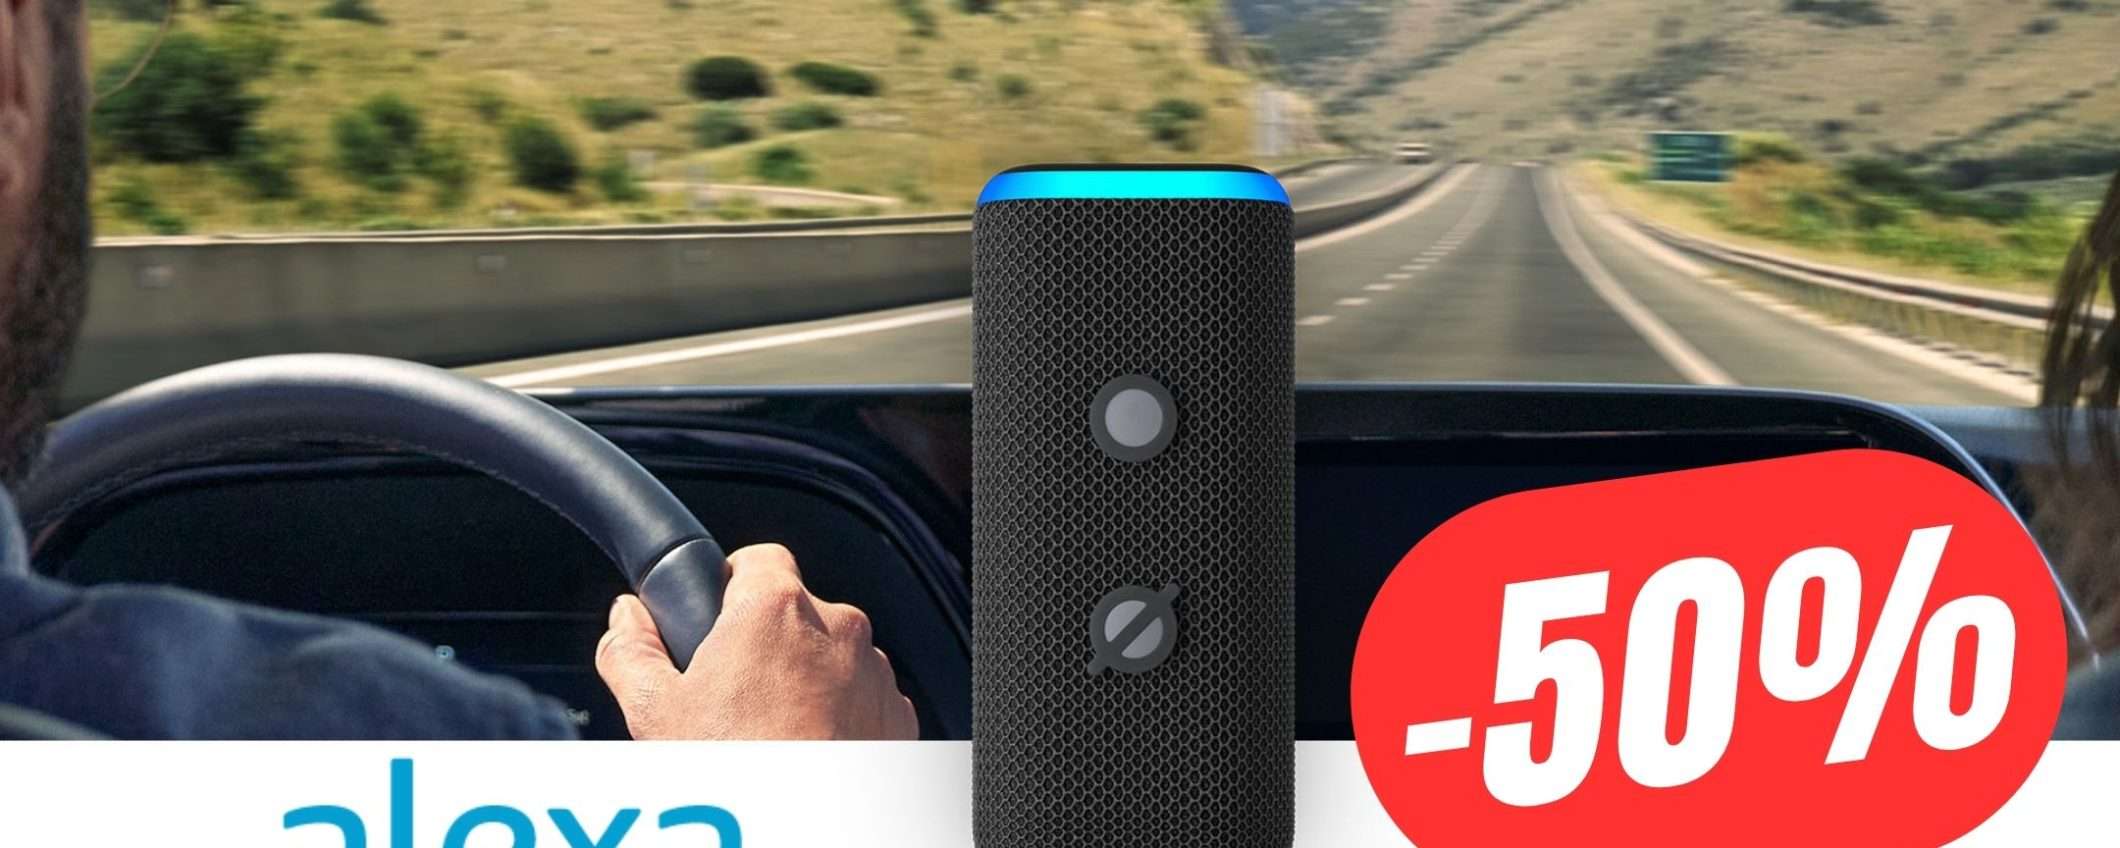 Porta Alexa in Auto e guida in sicurezza!